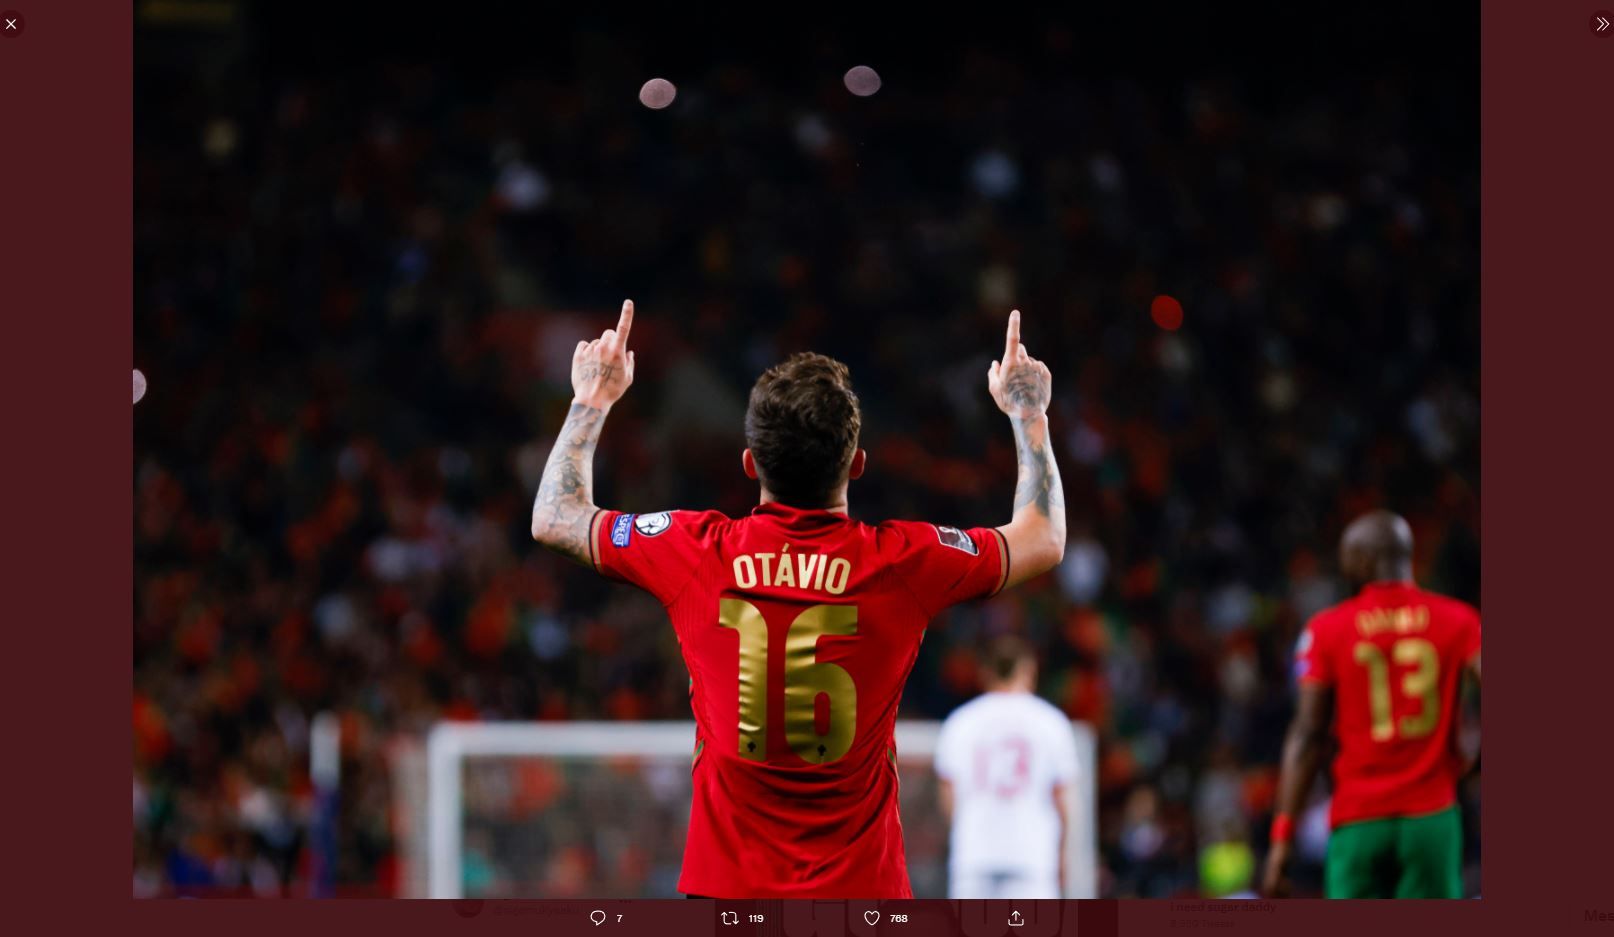 Selebrasi pemain Portugal, Otavio, setelah mencetak gol ke gawang Turki di playoff Kualifikasi Piala Dunia 2022.